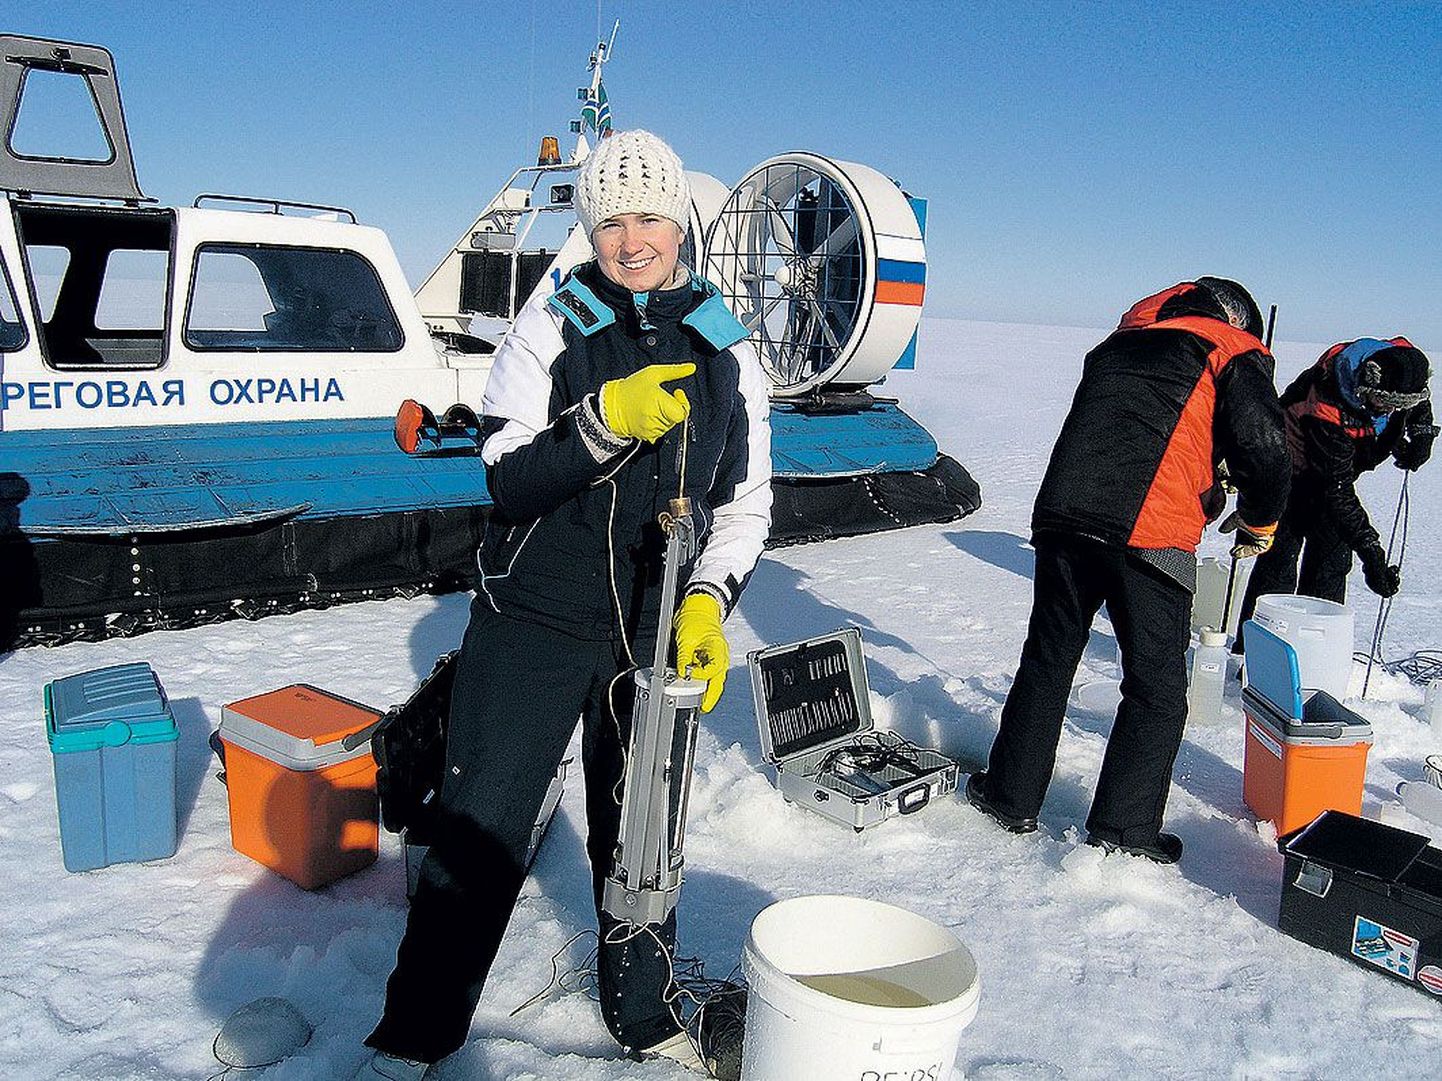 Eesti Maaülikooli doktorant Olga Buhvestova võttis ekspeditsioonil veeproove, taamal tegutsesid Eesti Keskkonnauuringute Keskuse tehnikud Jüri Tenno ja Aivar Roomet.